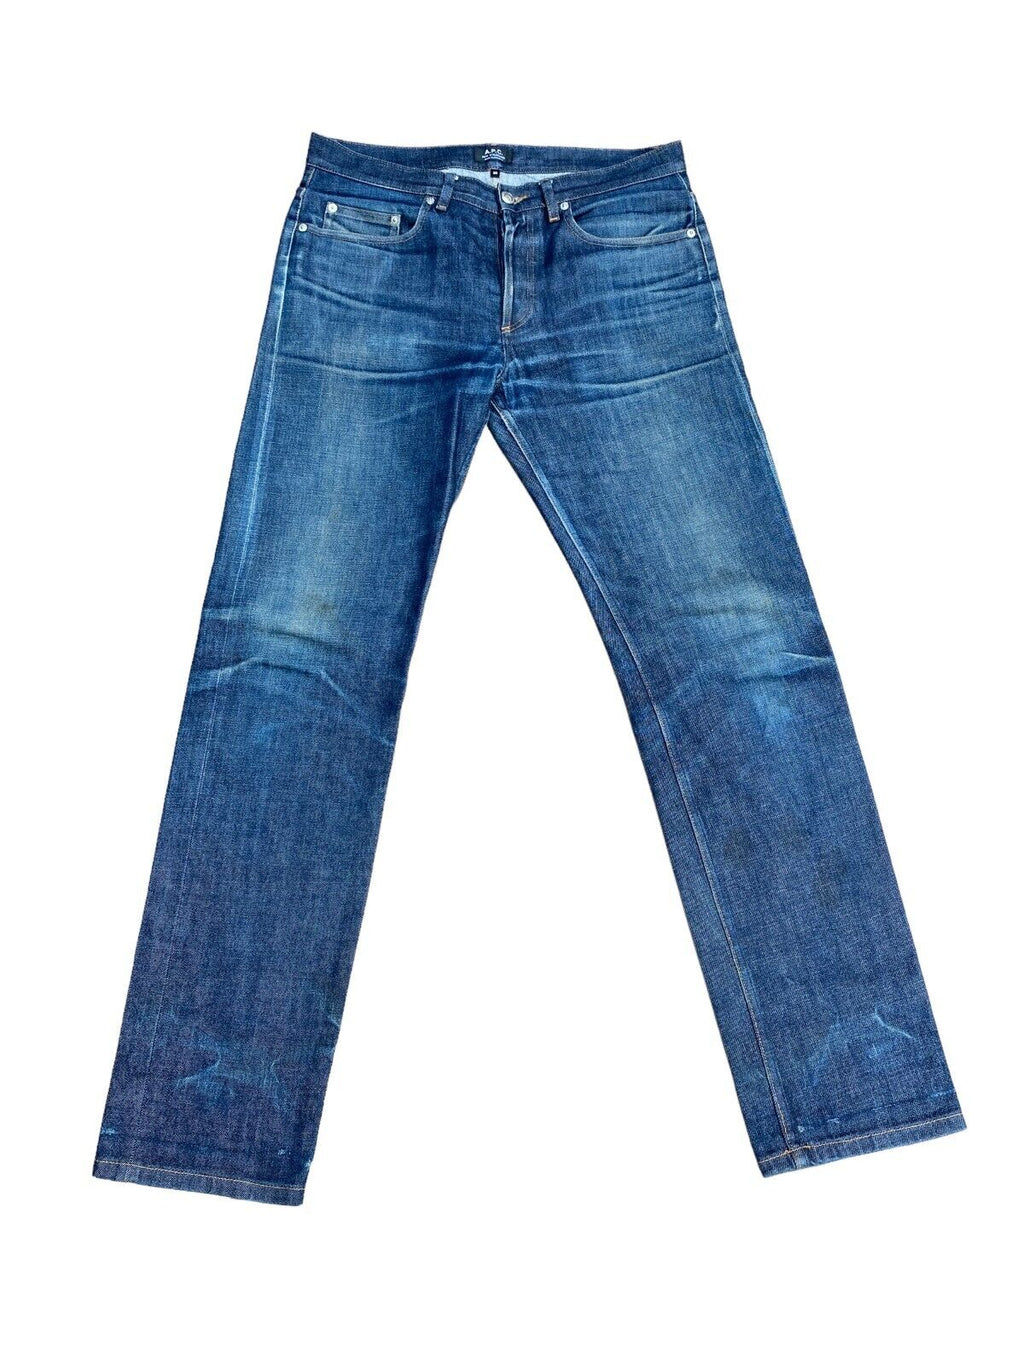 Blue denim Jeans  New Standard